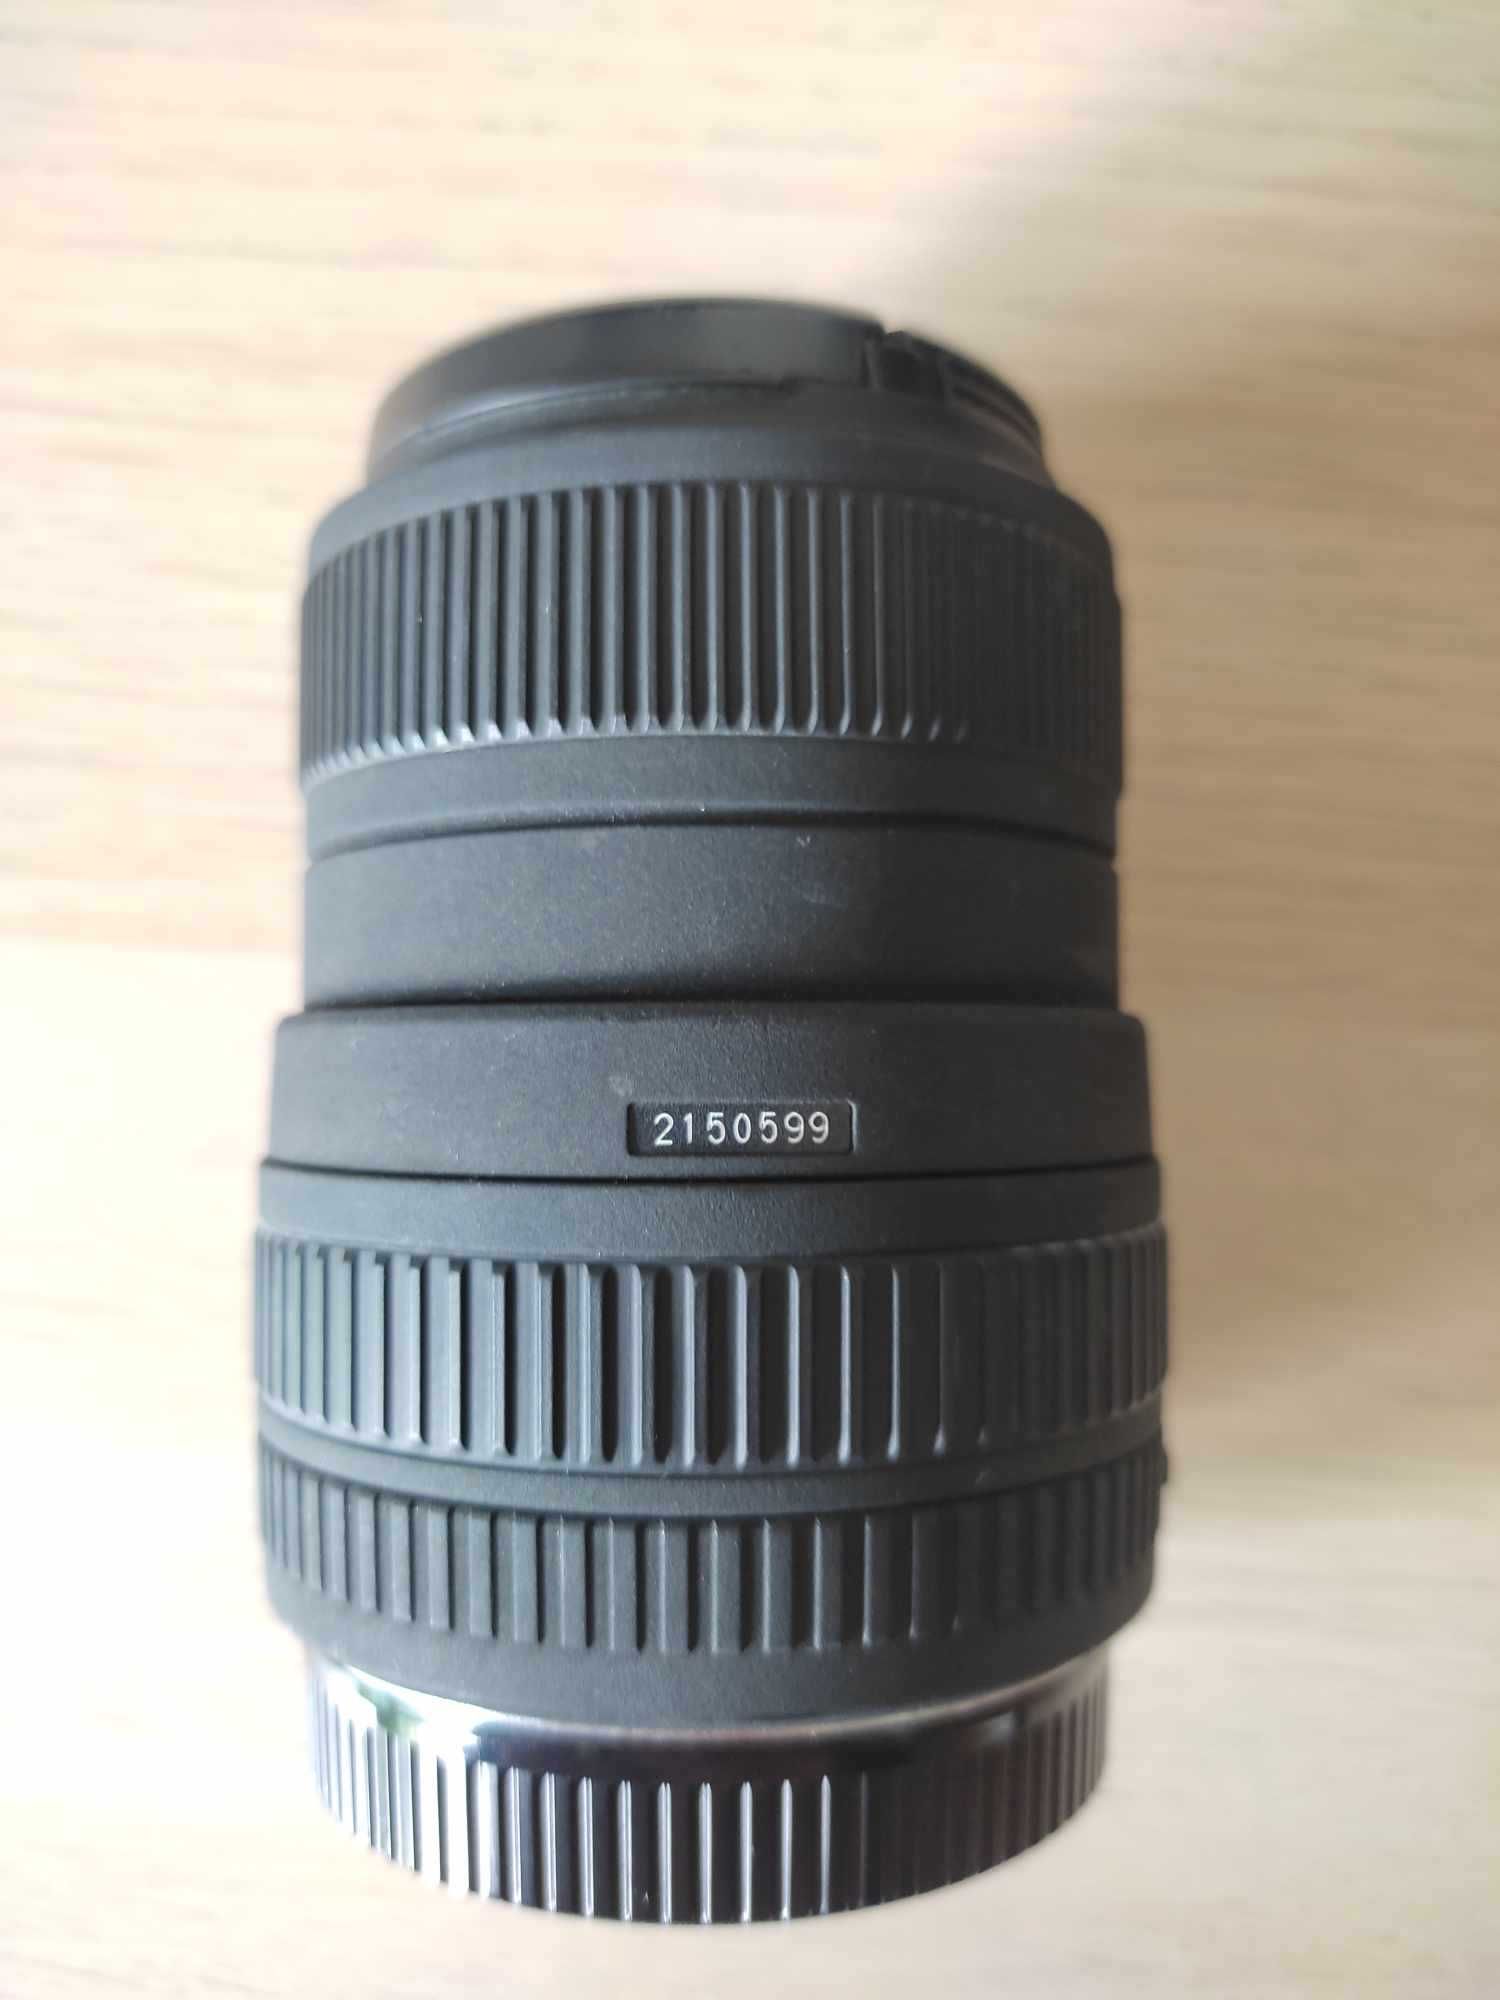 Sigma 55-200mm f/4-5.6 DC (Canon)